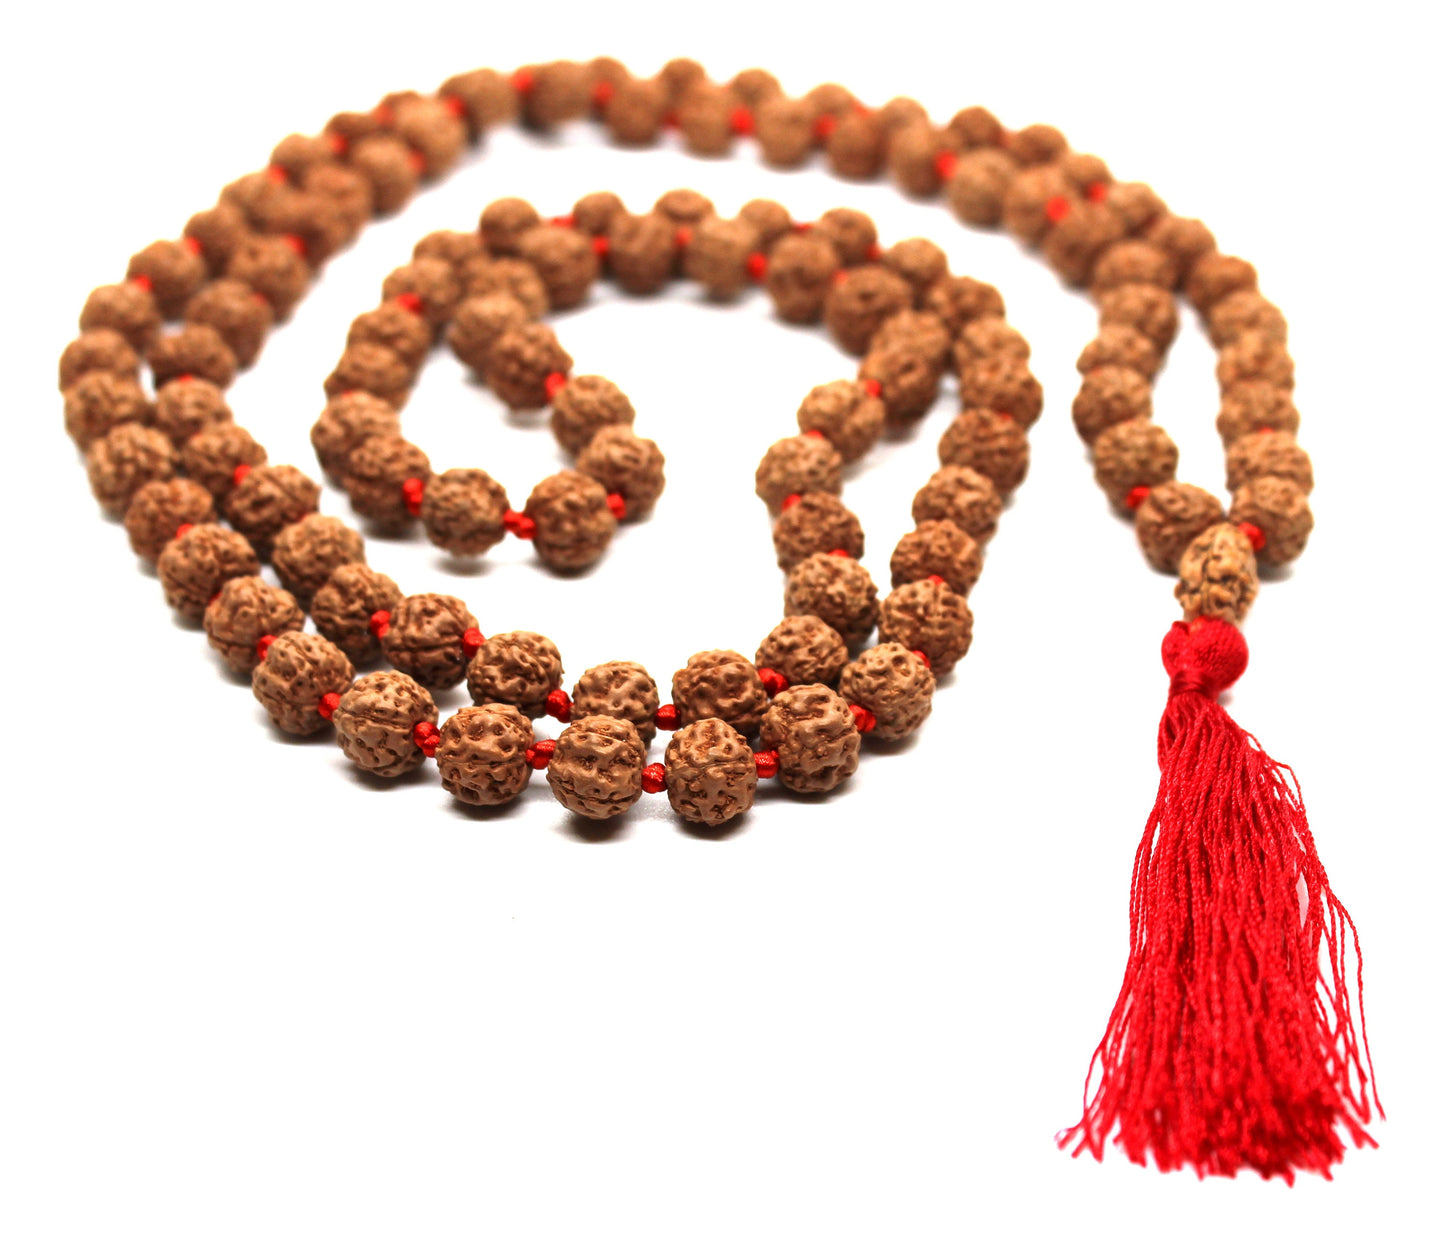 Rudraksha Mala 108 Beads 5 mukhi Japa Rosary with 2 Mukhi Rudraksh TWO MUKHI GURU bead Hand made premium Tassel mala - Yoga Meditation